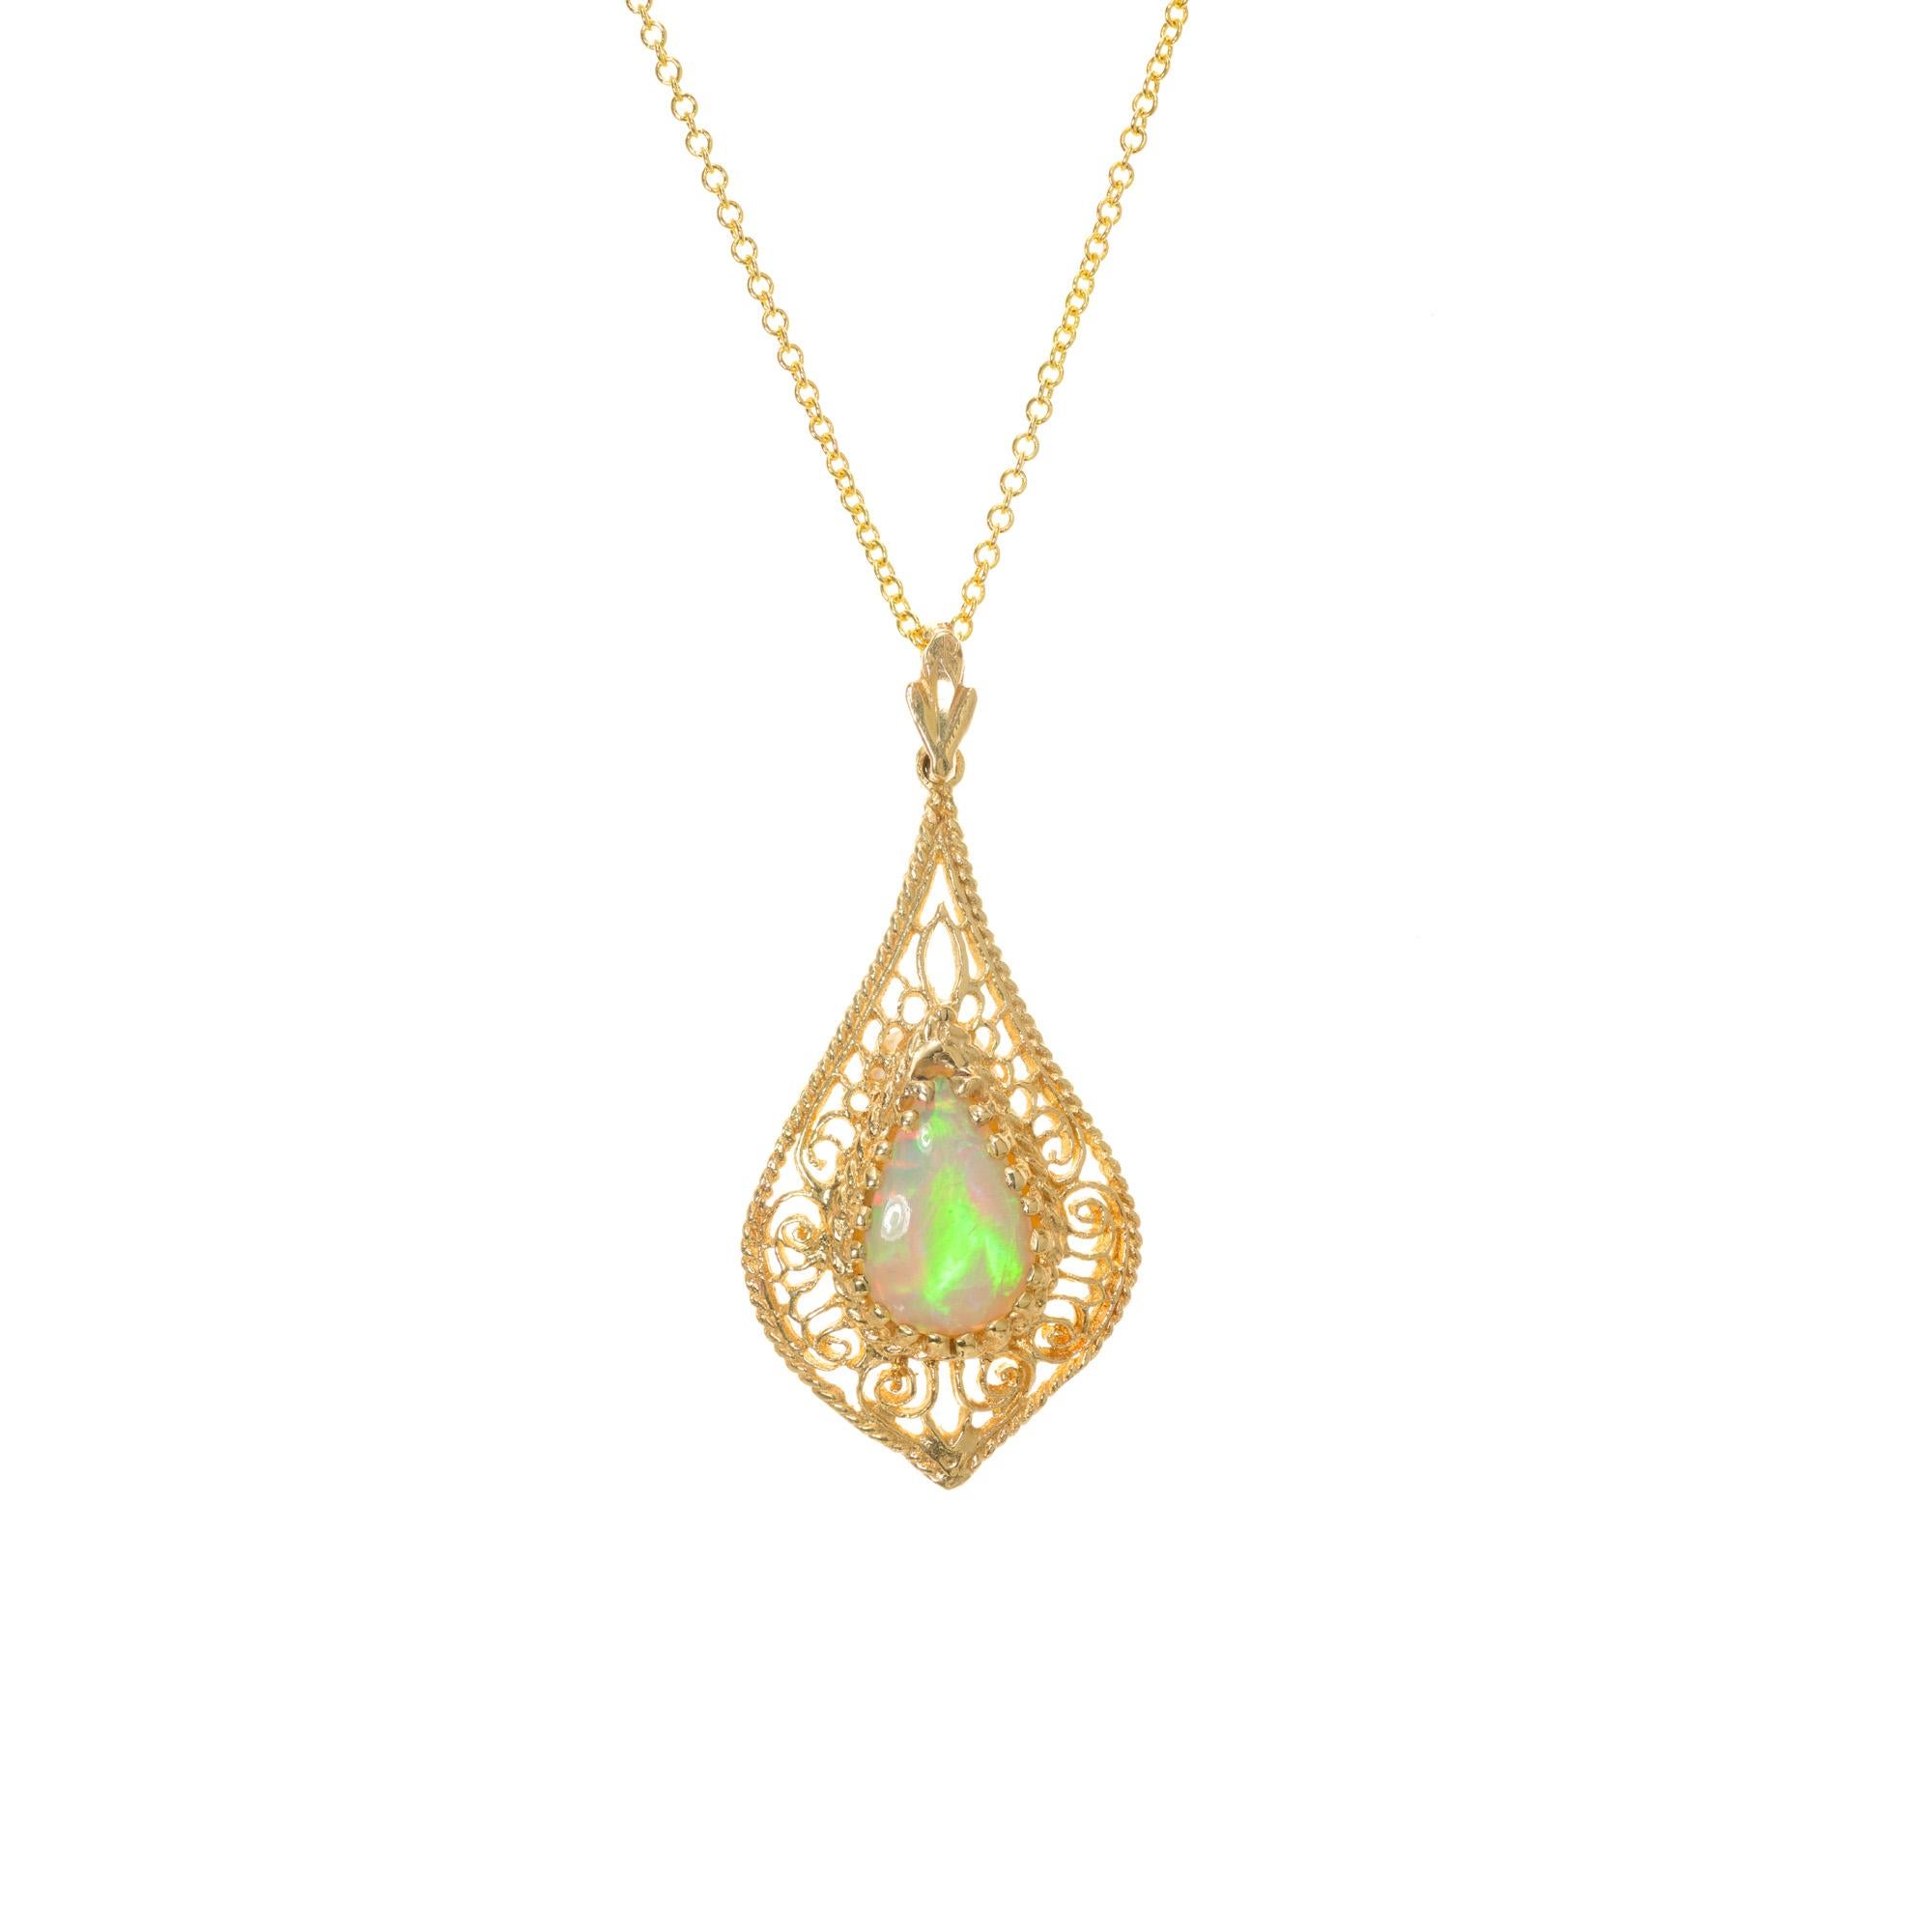 Collier à pendentifs en filigrane en opale verte orange vif des années 1960. Opale en forme de poire de 1,44ct sertie dans une monture filigranée finement détaillée.  Avec une chaîne en or jaune 14k de 18 pouces. 
Suivez-nous sur notre vitrine